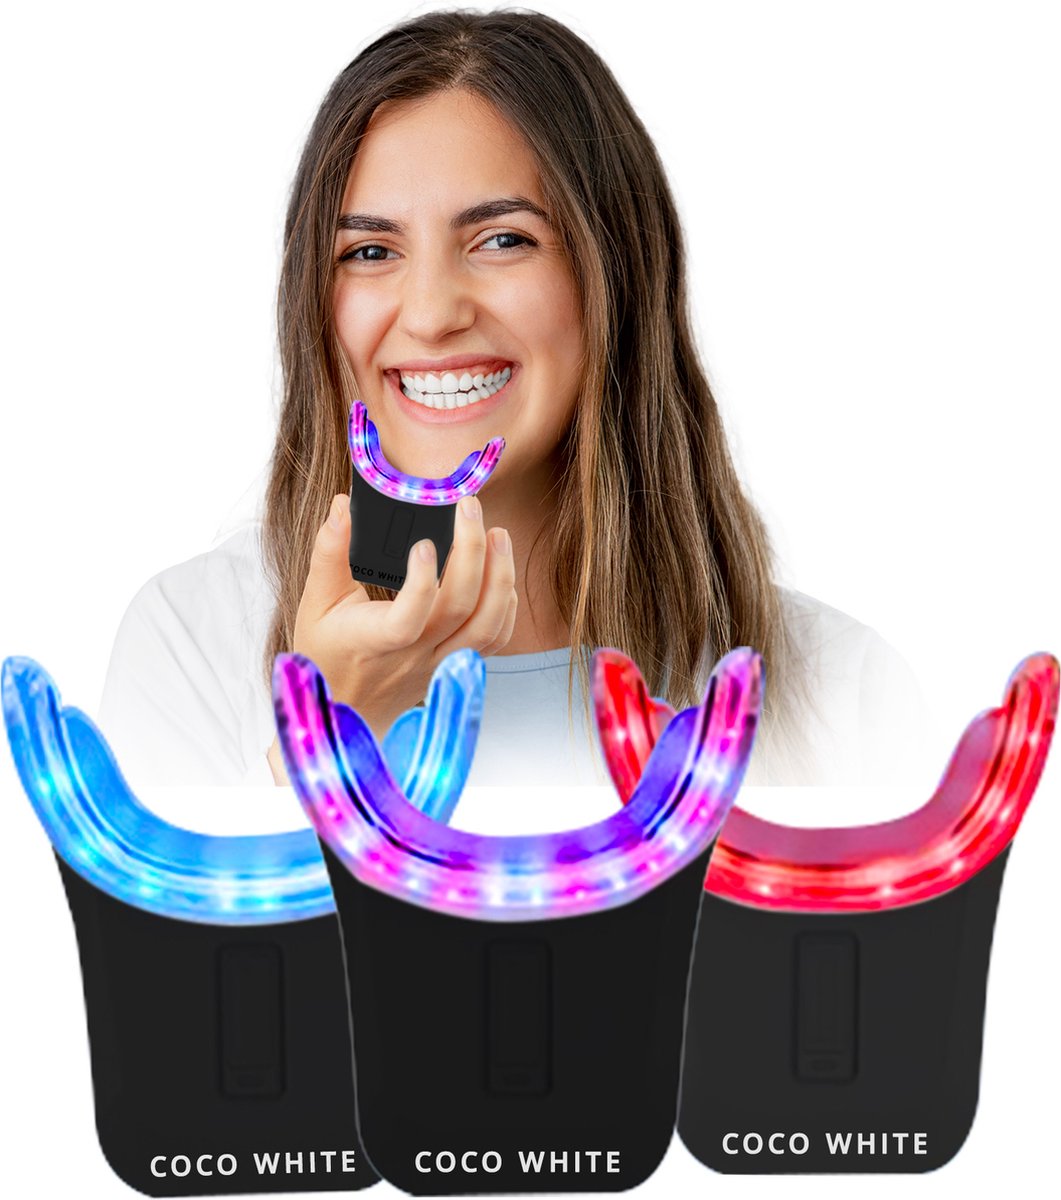 Coco White Tandenbleekset voor Witte tanden - Tanden Bleken met Teeth Whitening Strips - Tandenblekers zonder Peroxide